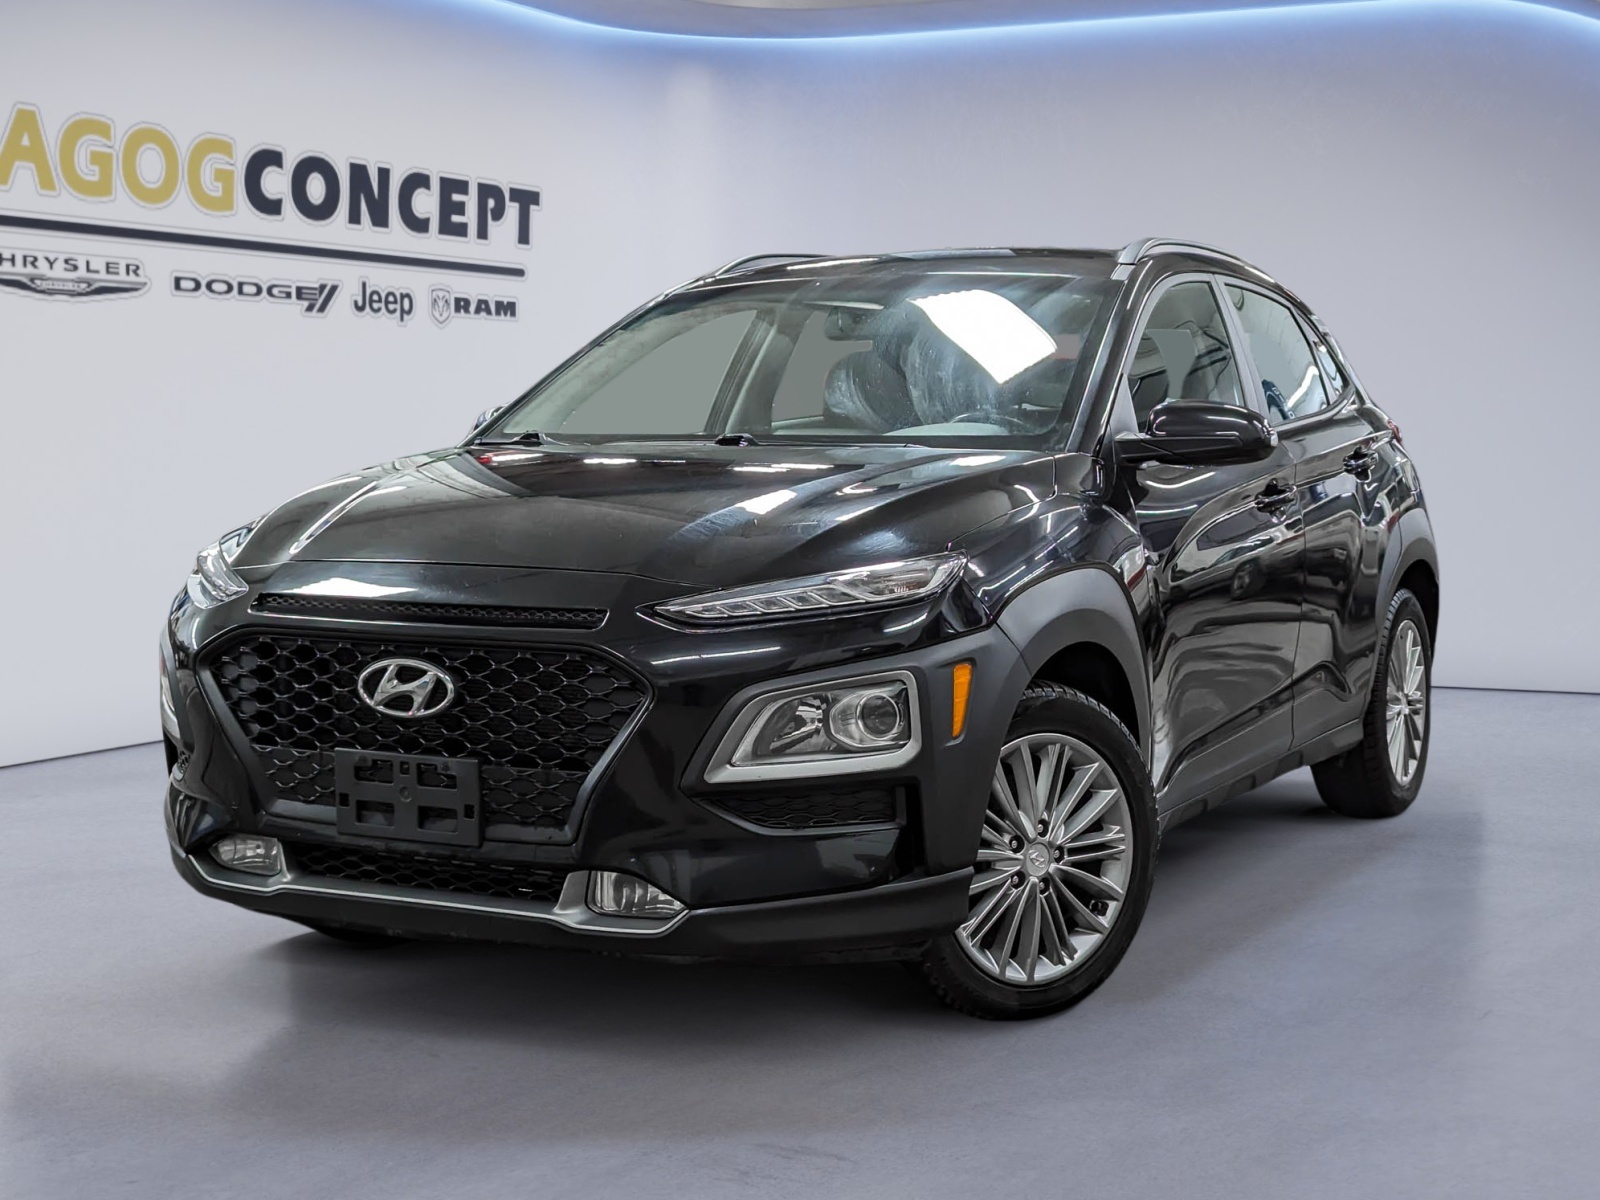 2020 Hyundai Kona 2.0L Preferred AWD